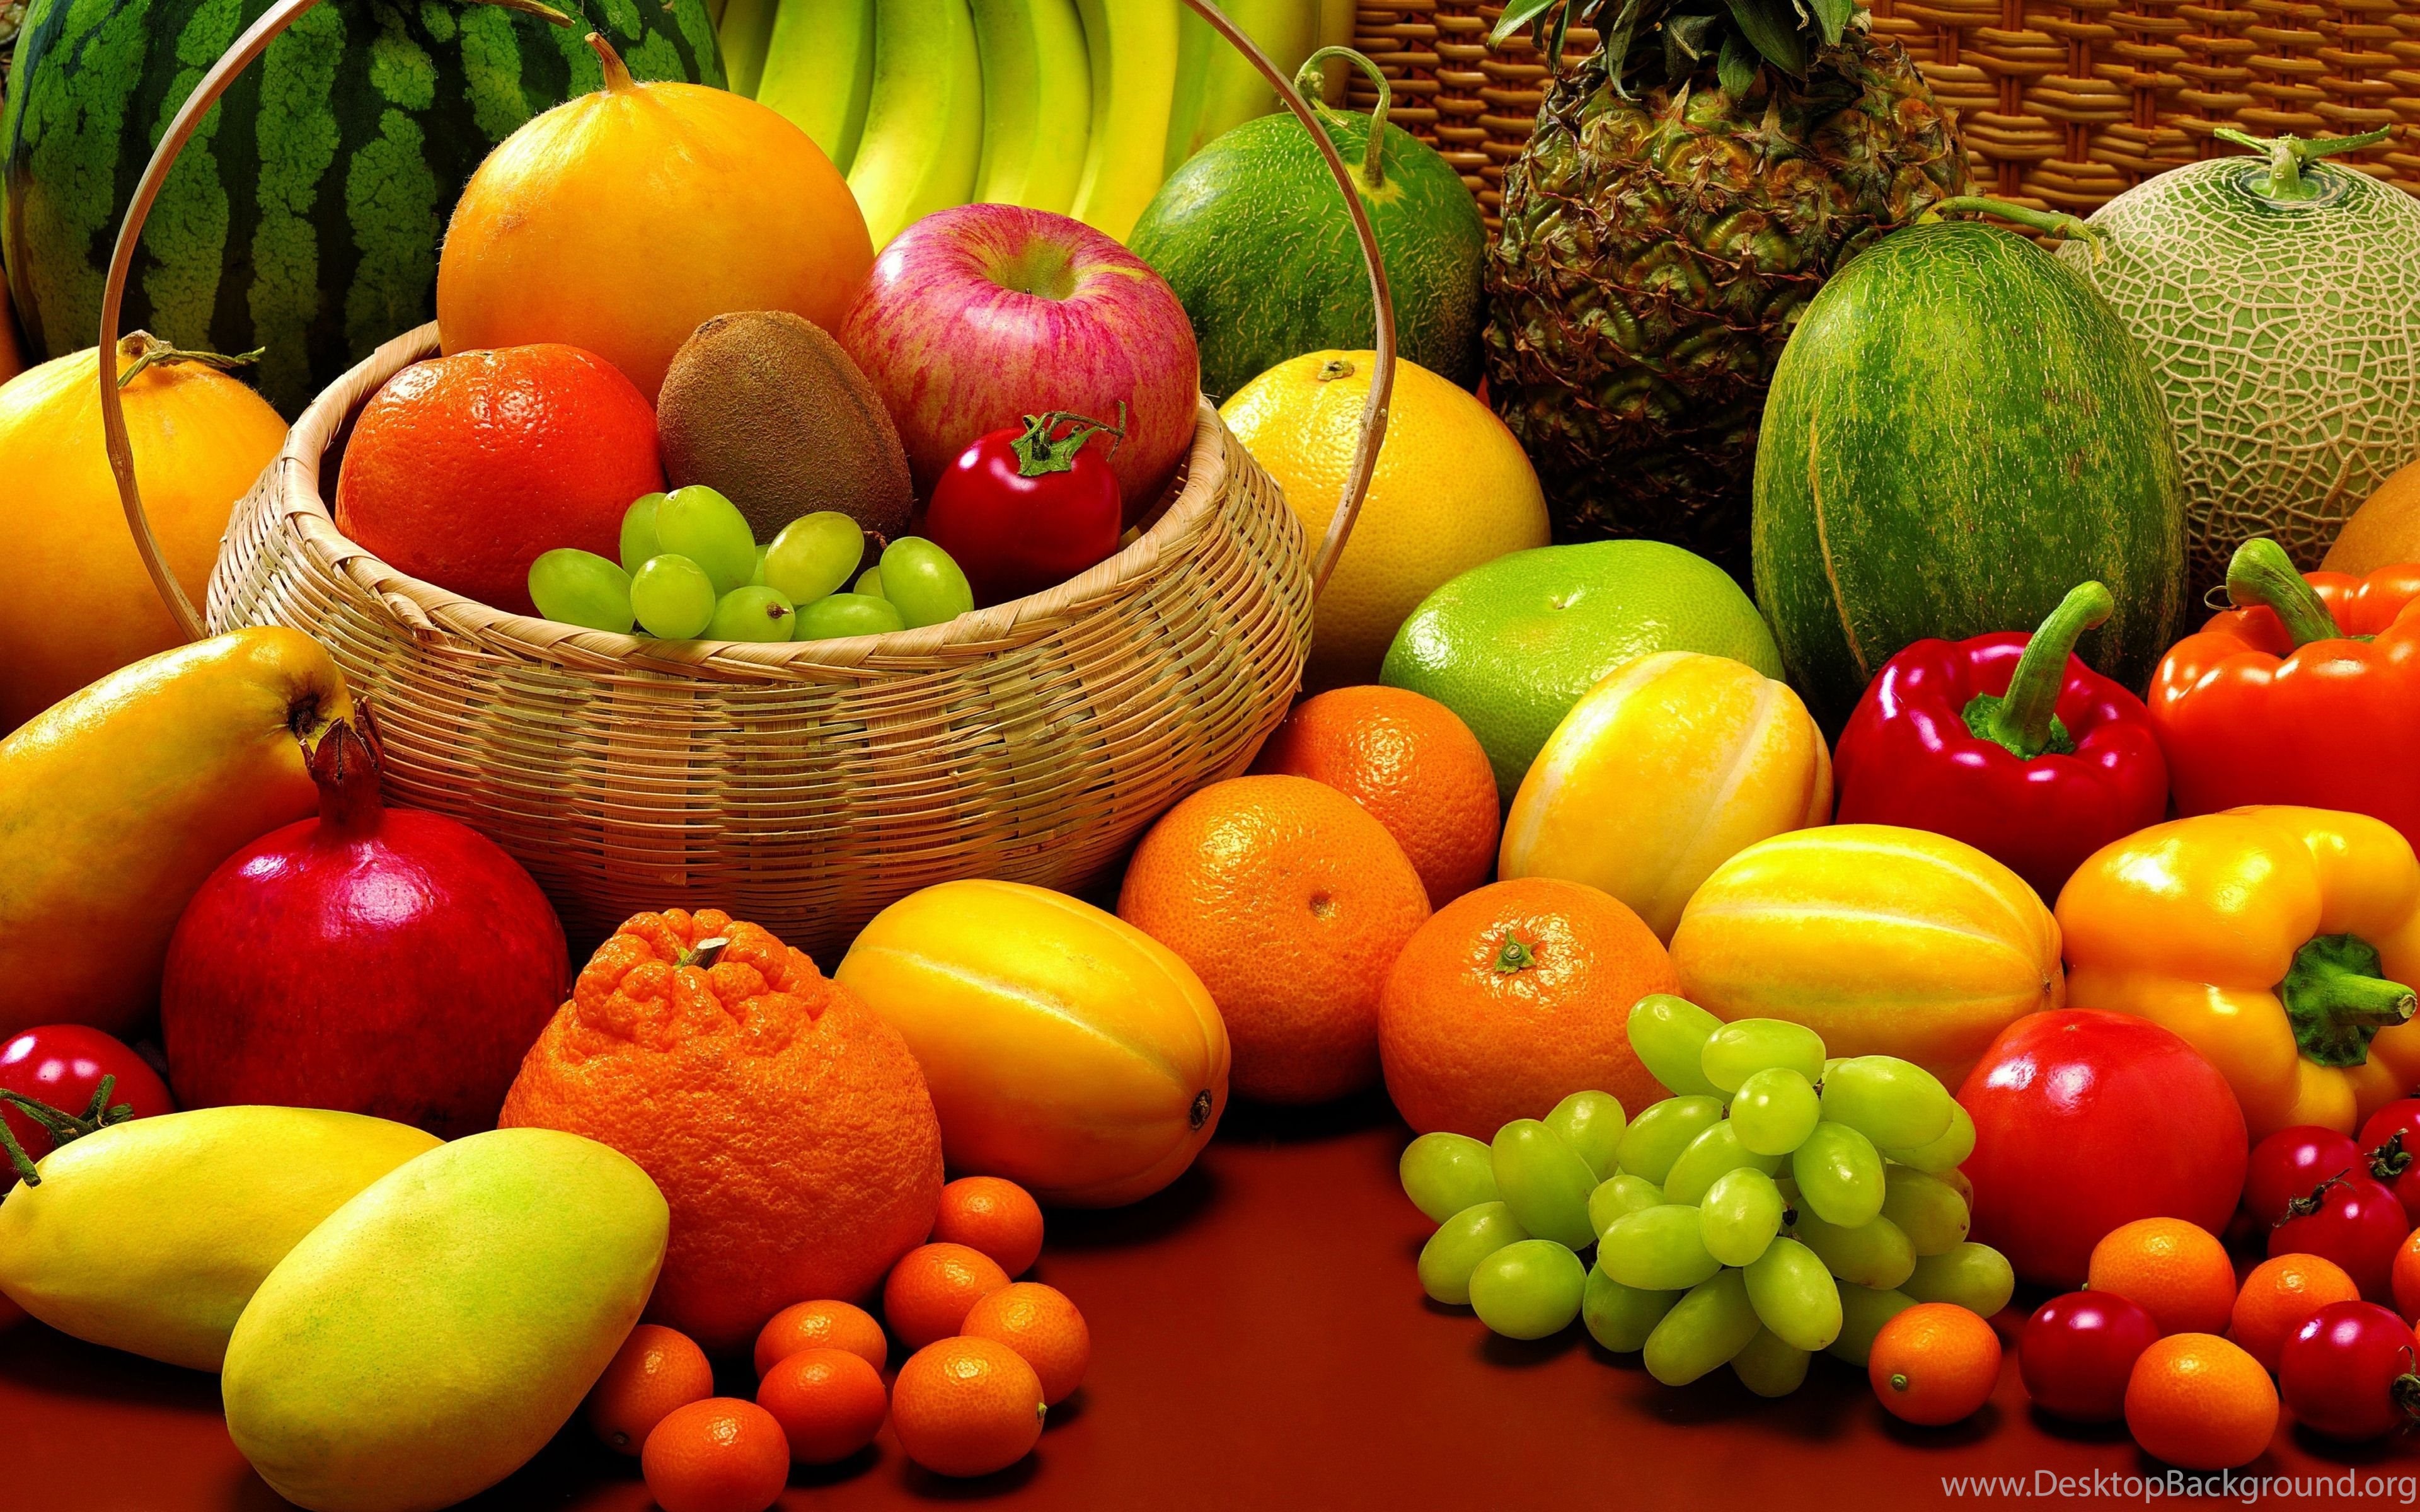 Плоды овощей и фруктов. Овощи и фрукты. Овощи и ягоды. Разные фрукты. Сочные овощи и фрукты.